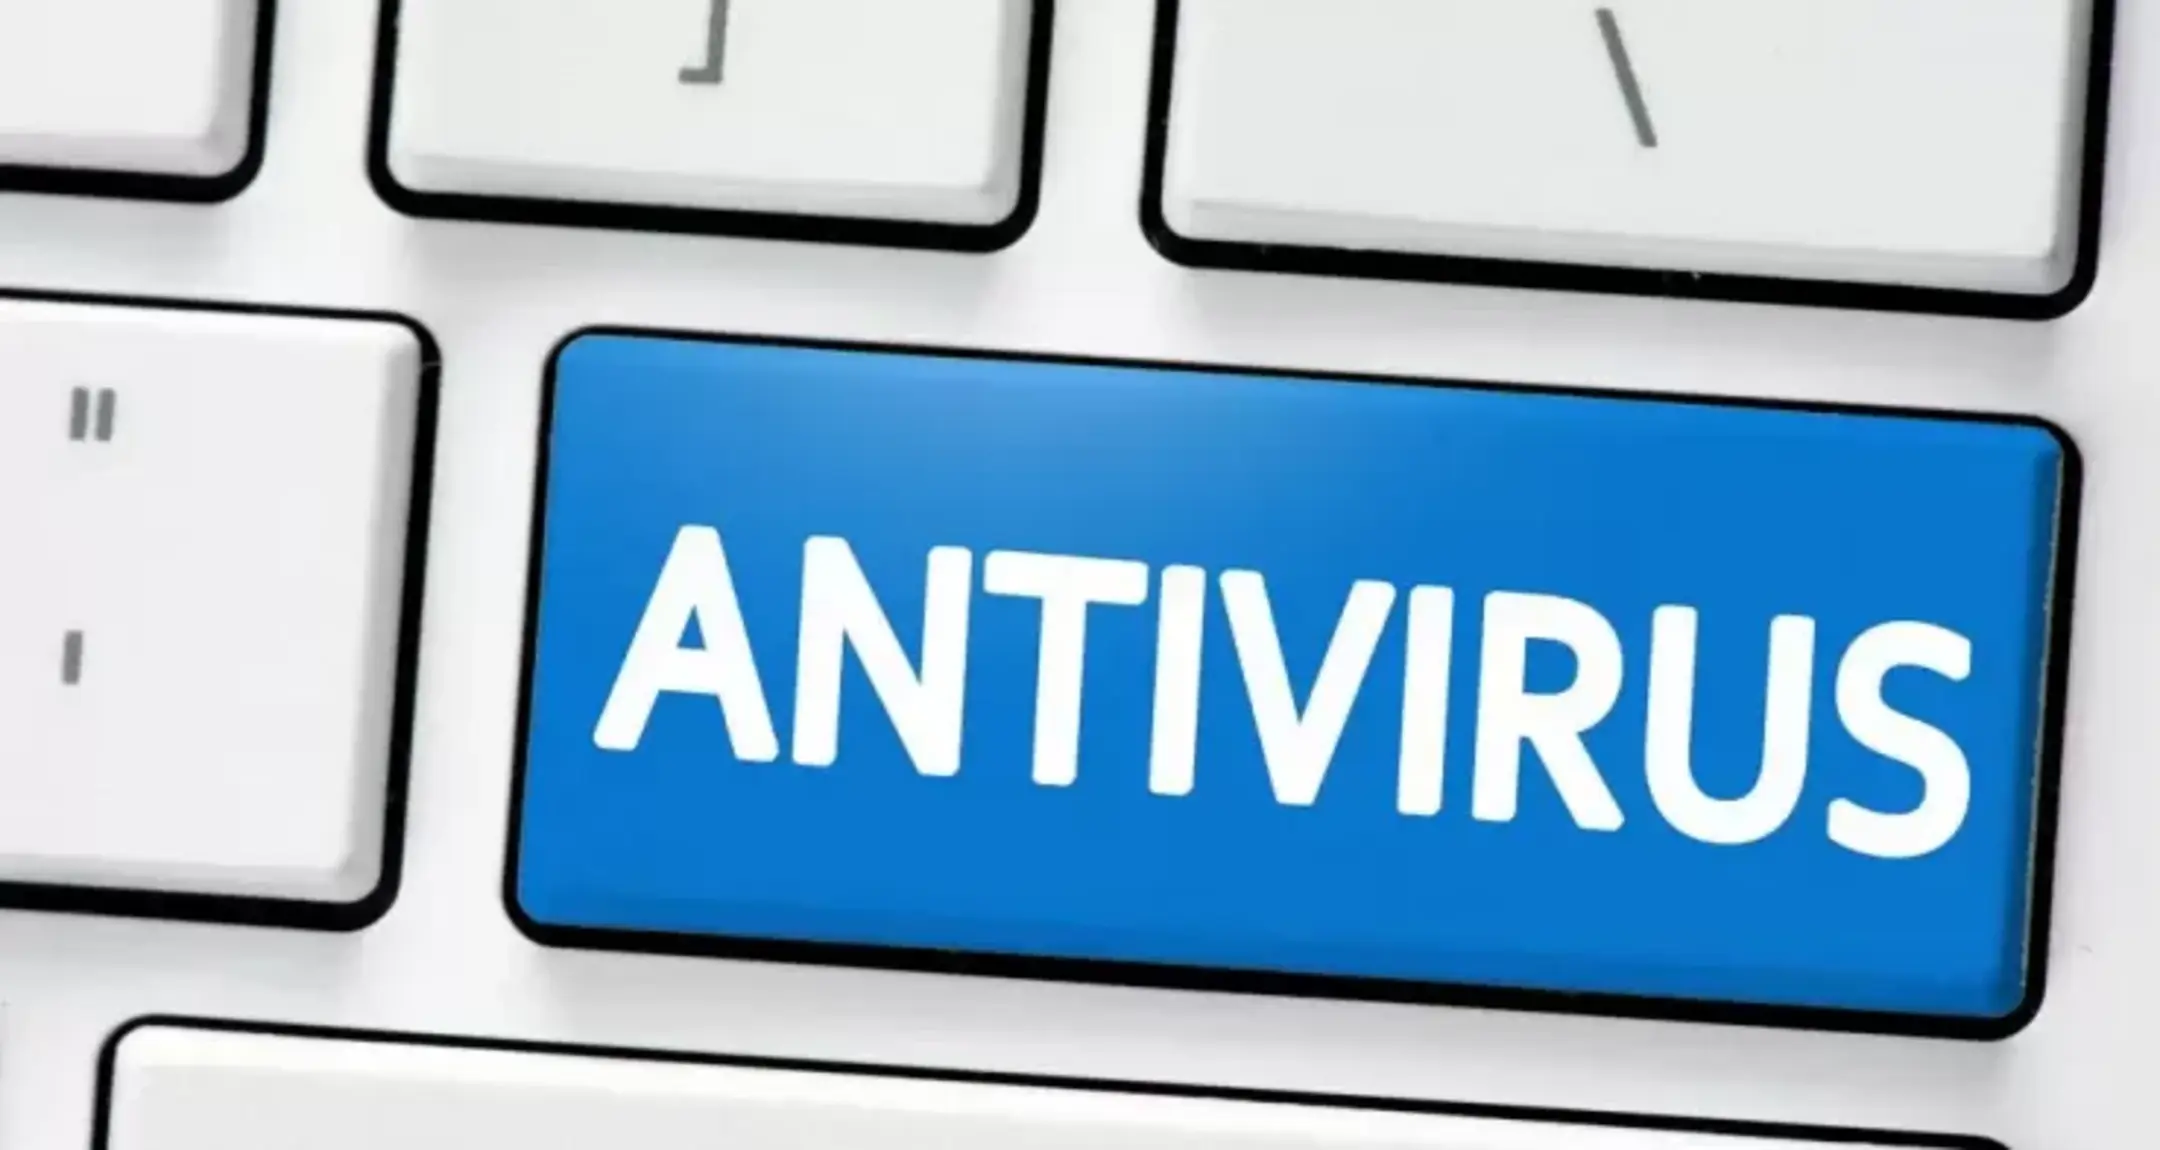 Norton 360 in promozione: antivirus e VPN a meno di 3€ al mese